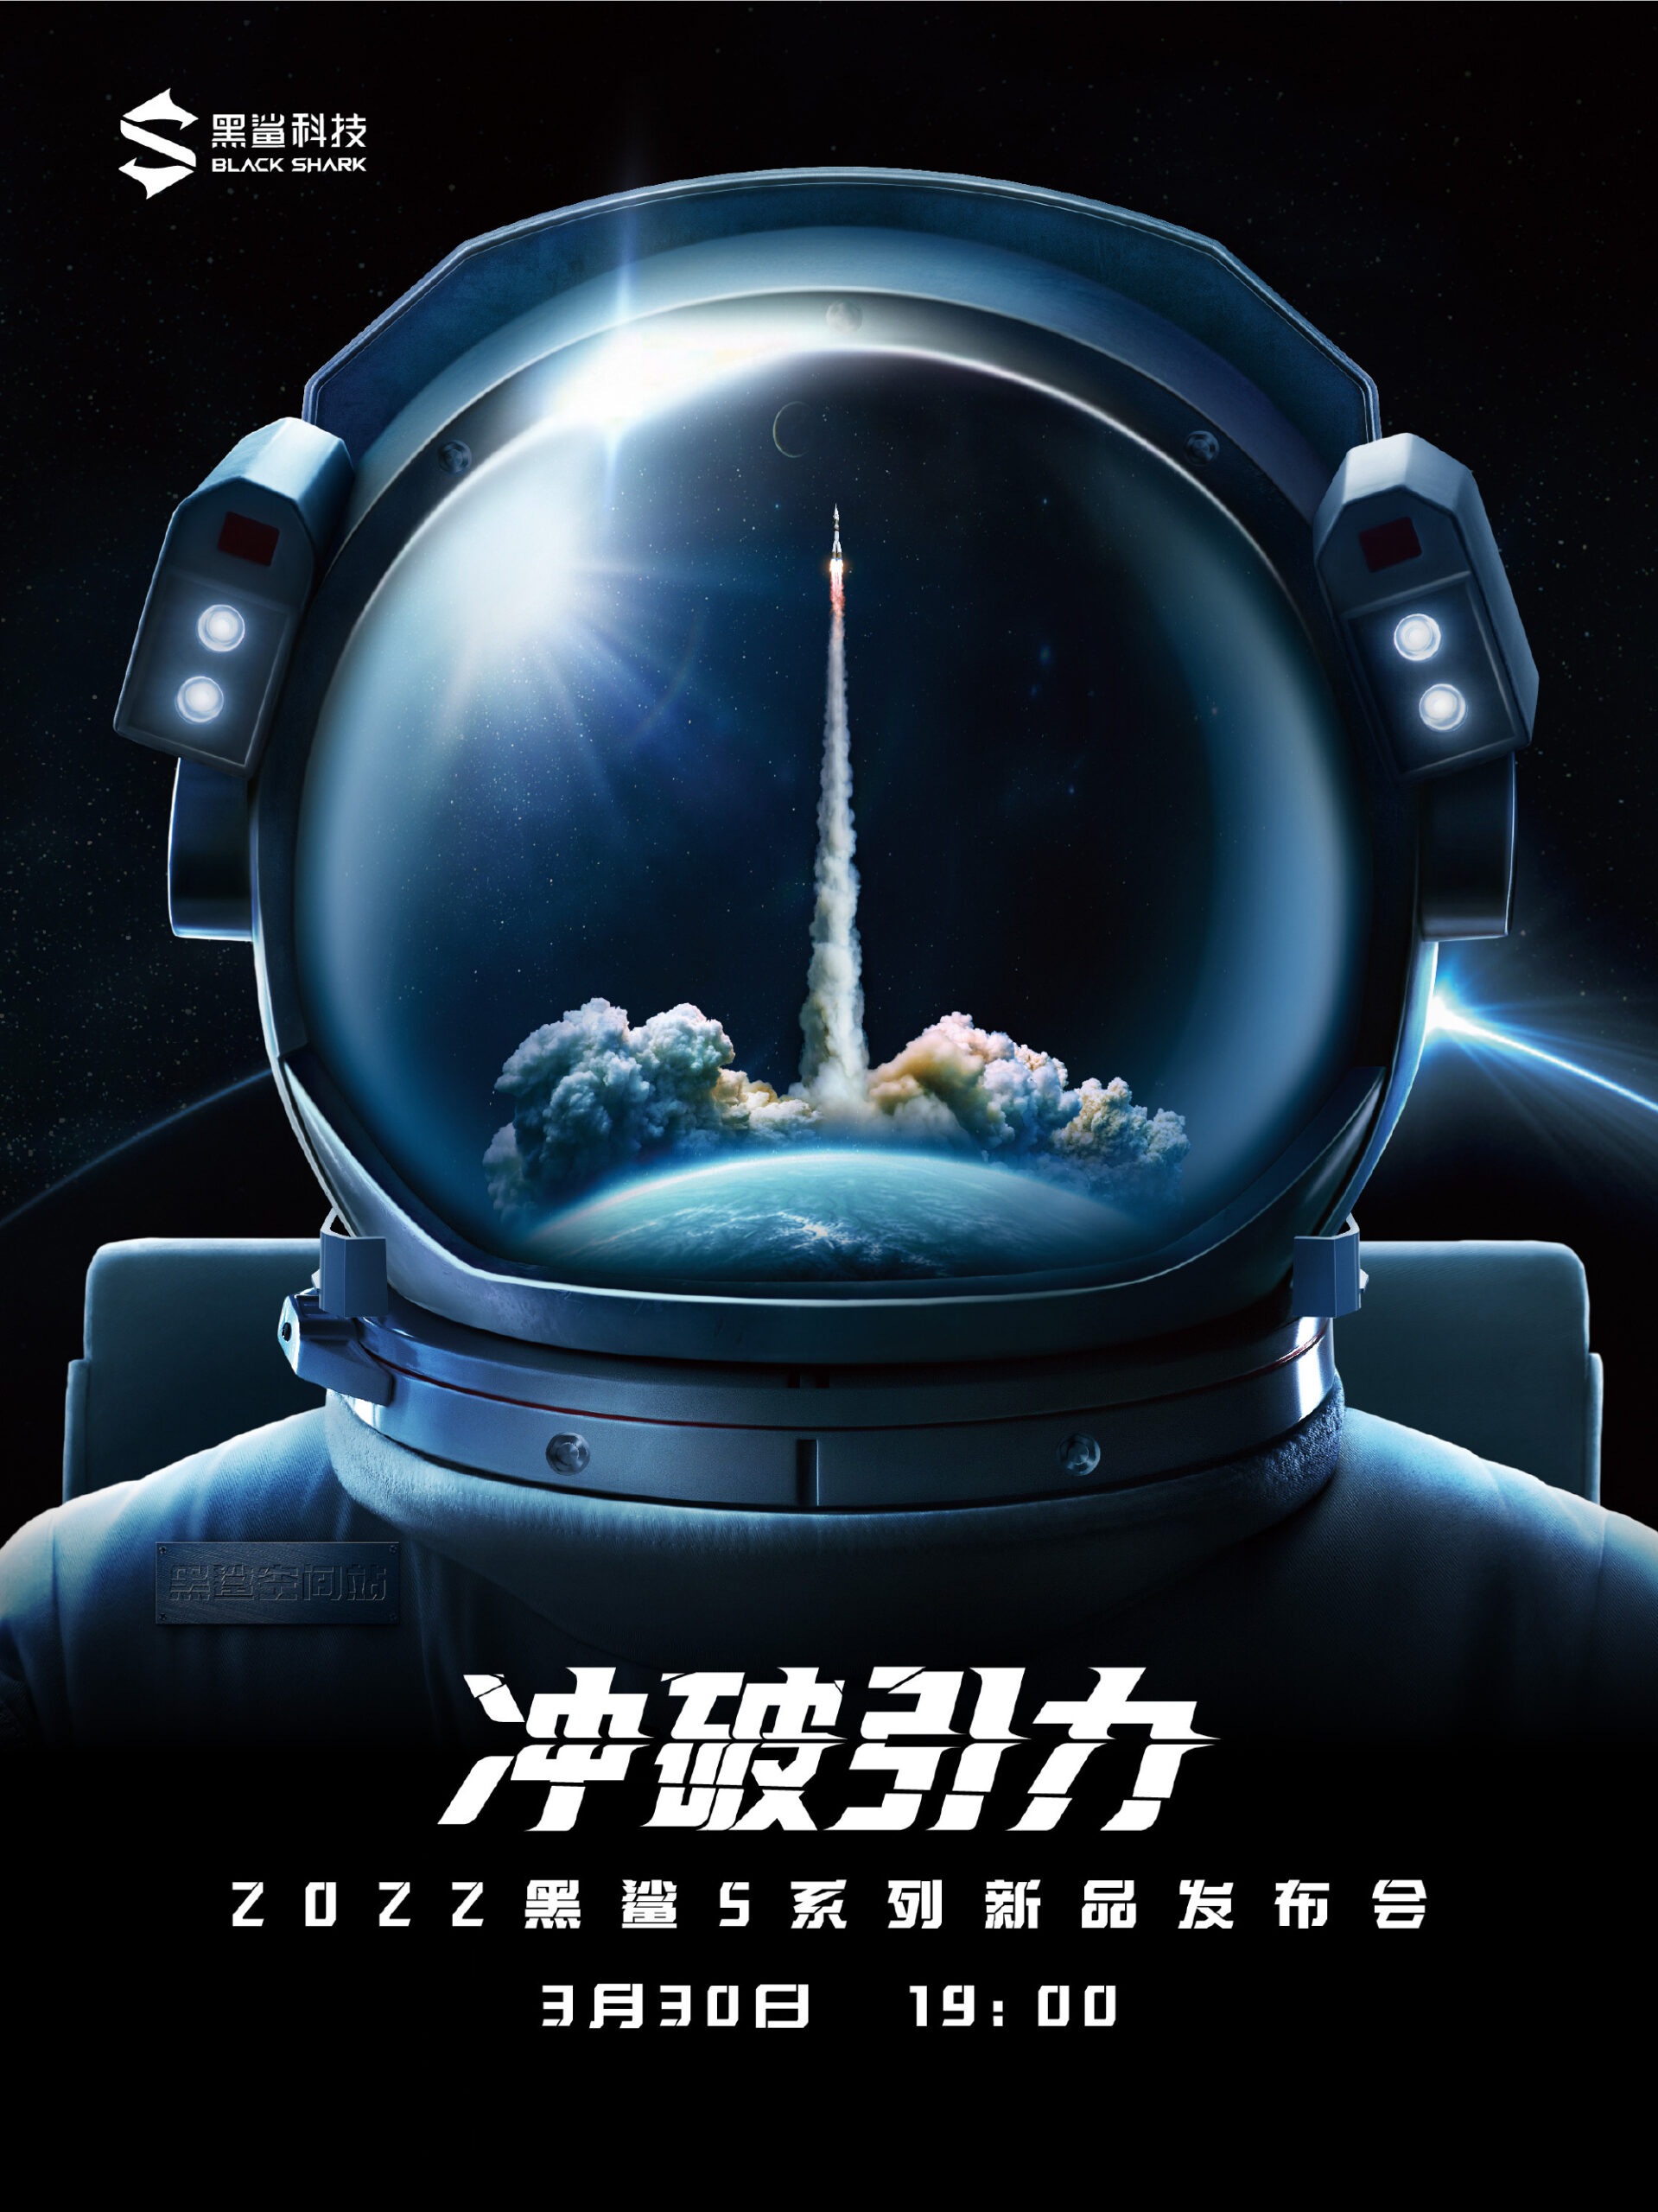 黑鲨游戏手机5将于3月30日发布联名中国航天